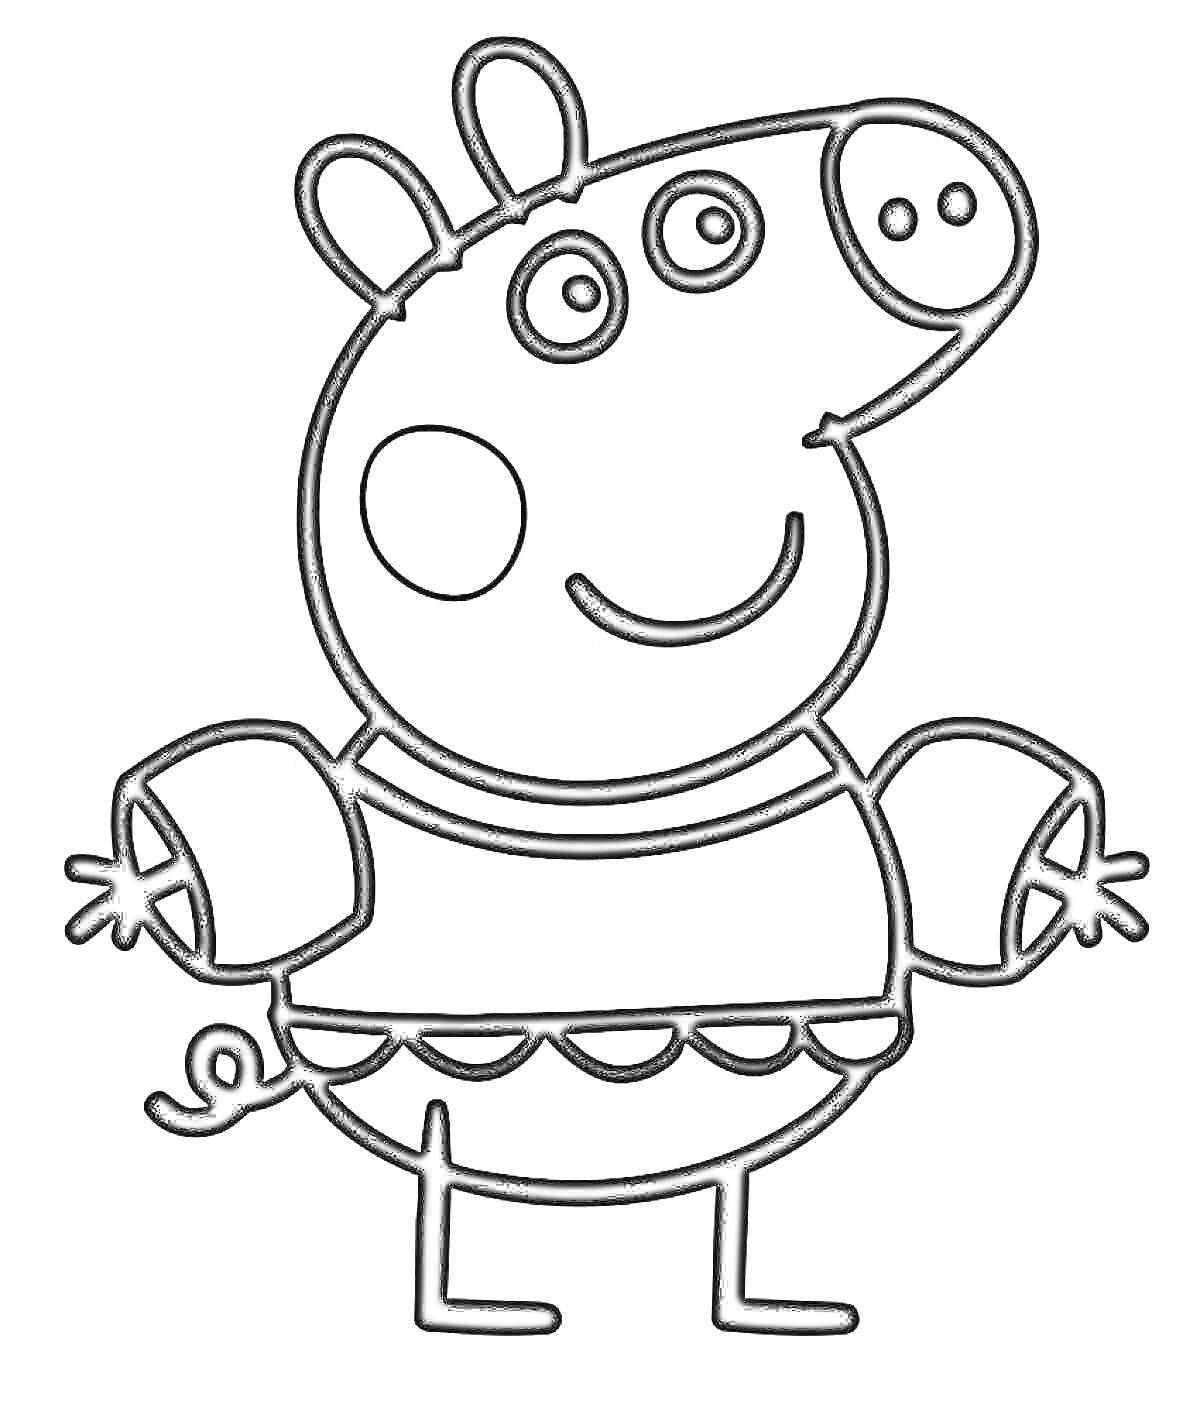 Раскраска Свинка Пеппа в свитере с волнистым узором